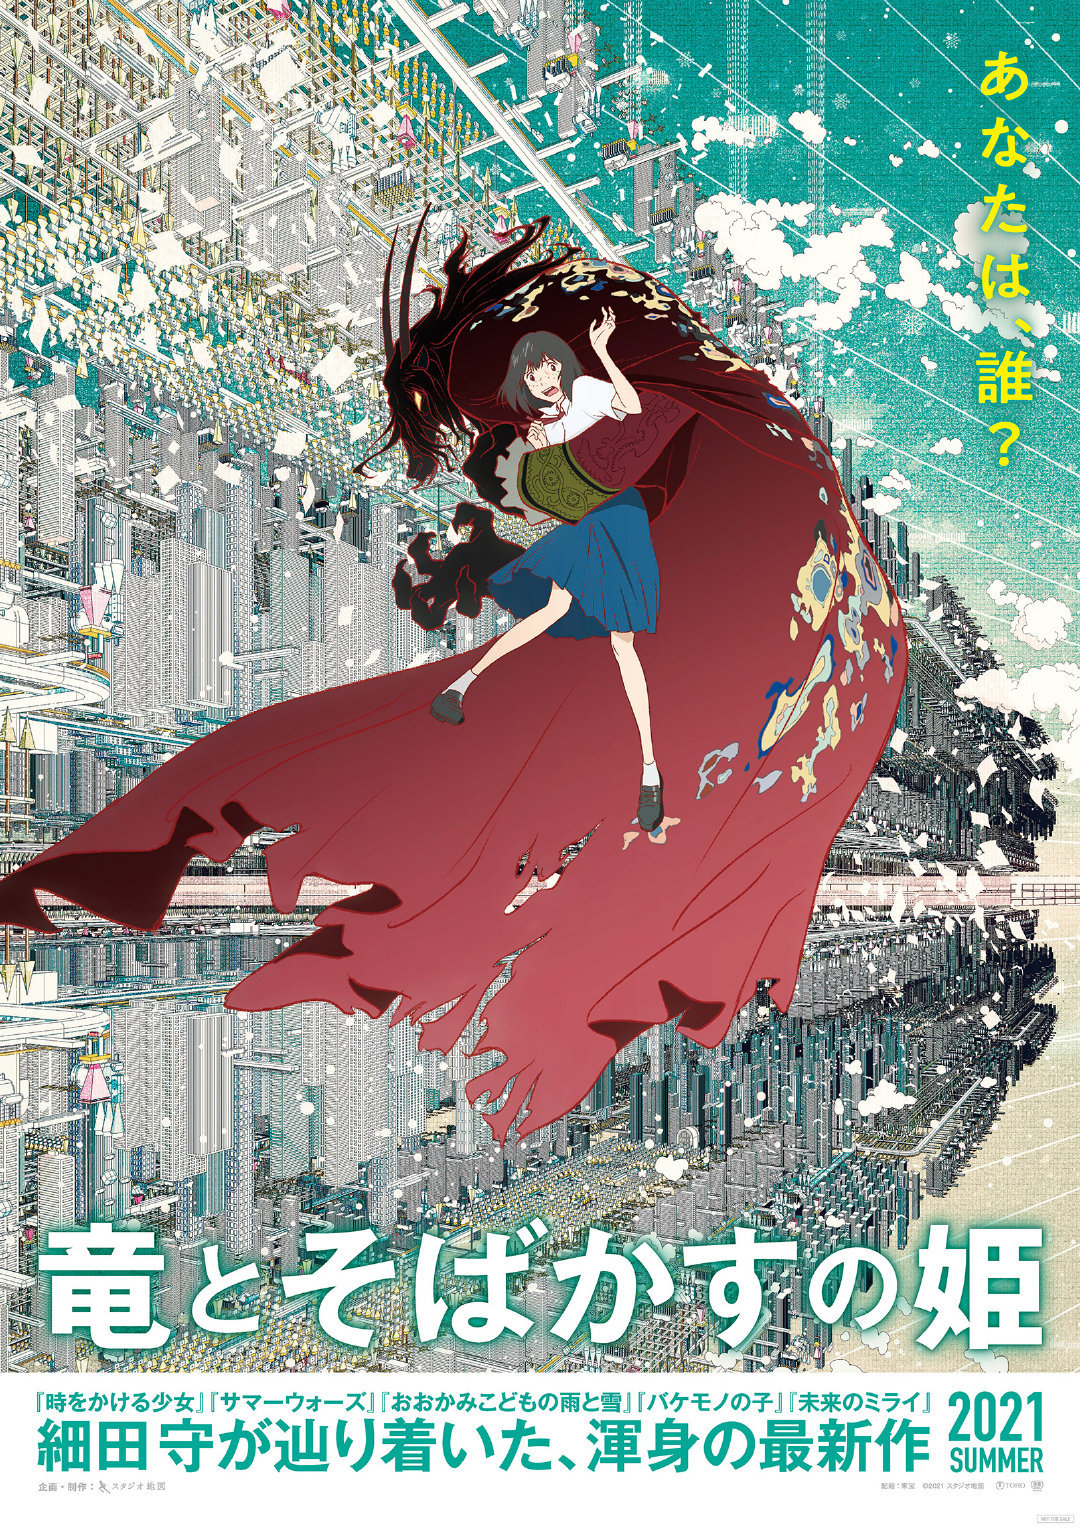 细田守新作剧场版「龙与雀斑公主」特报PV公开，2021年夏季上映